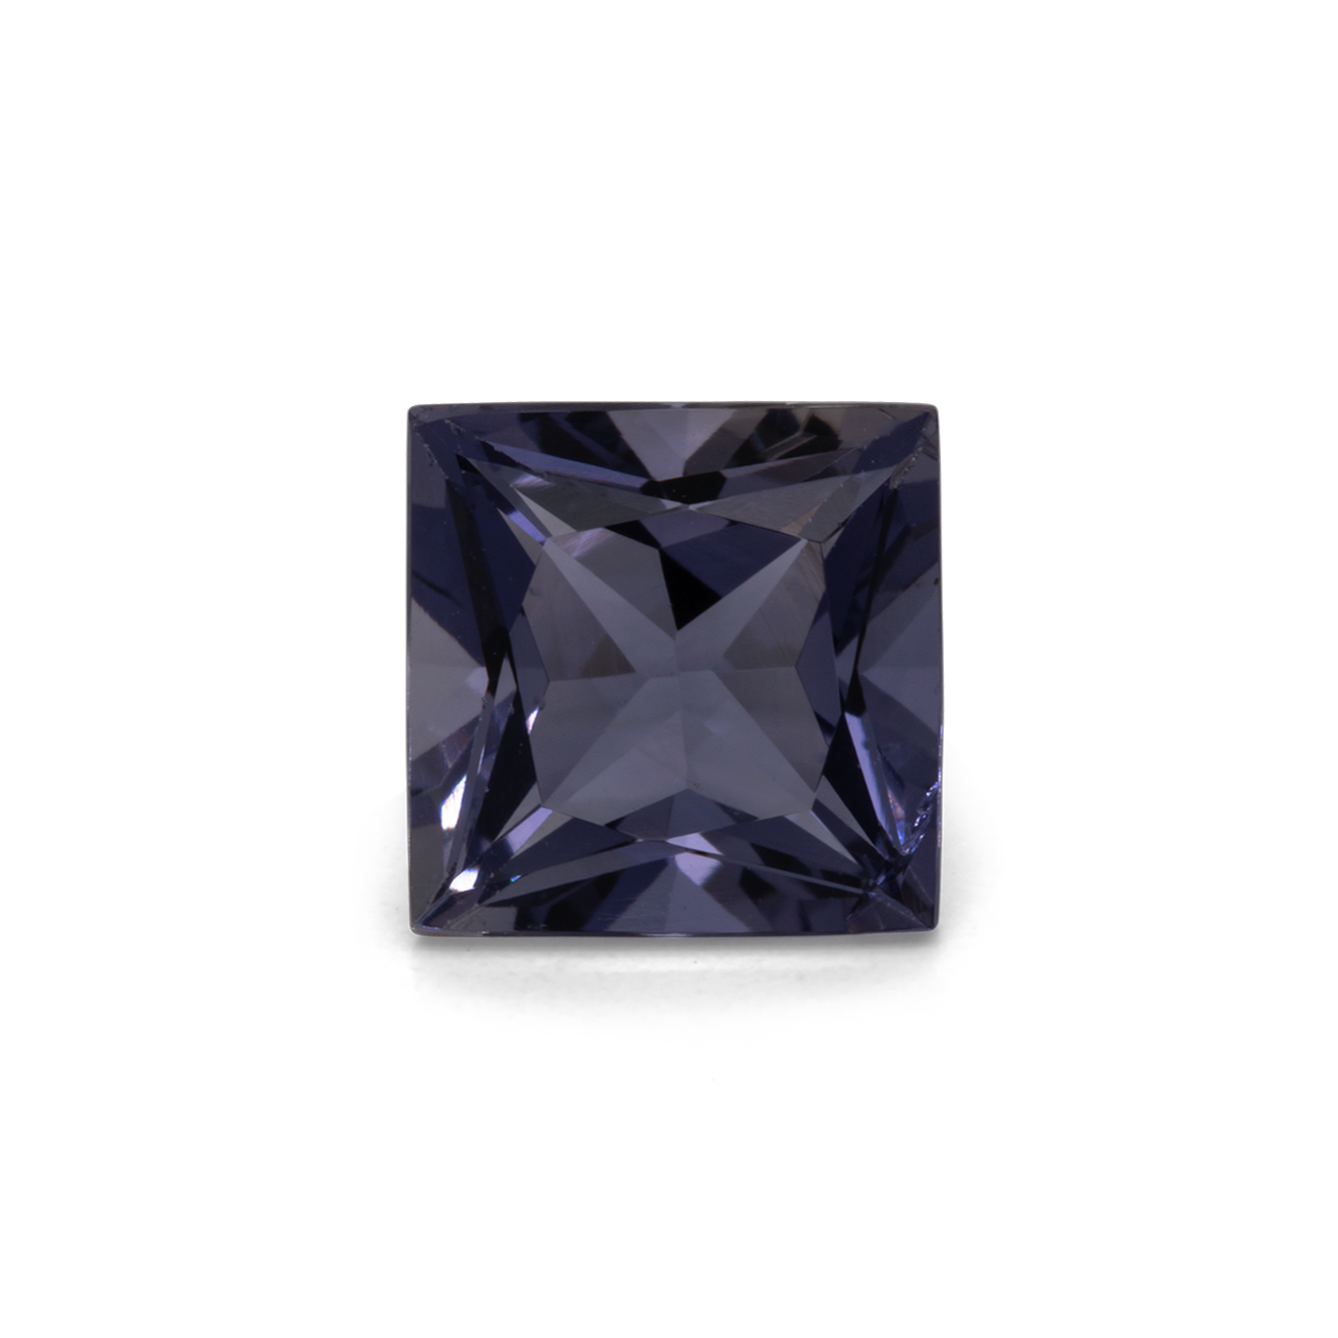 Iolite - purple/blue, square, 7x7 mm, 1.46 cts, No. IOL15001